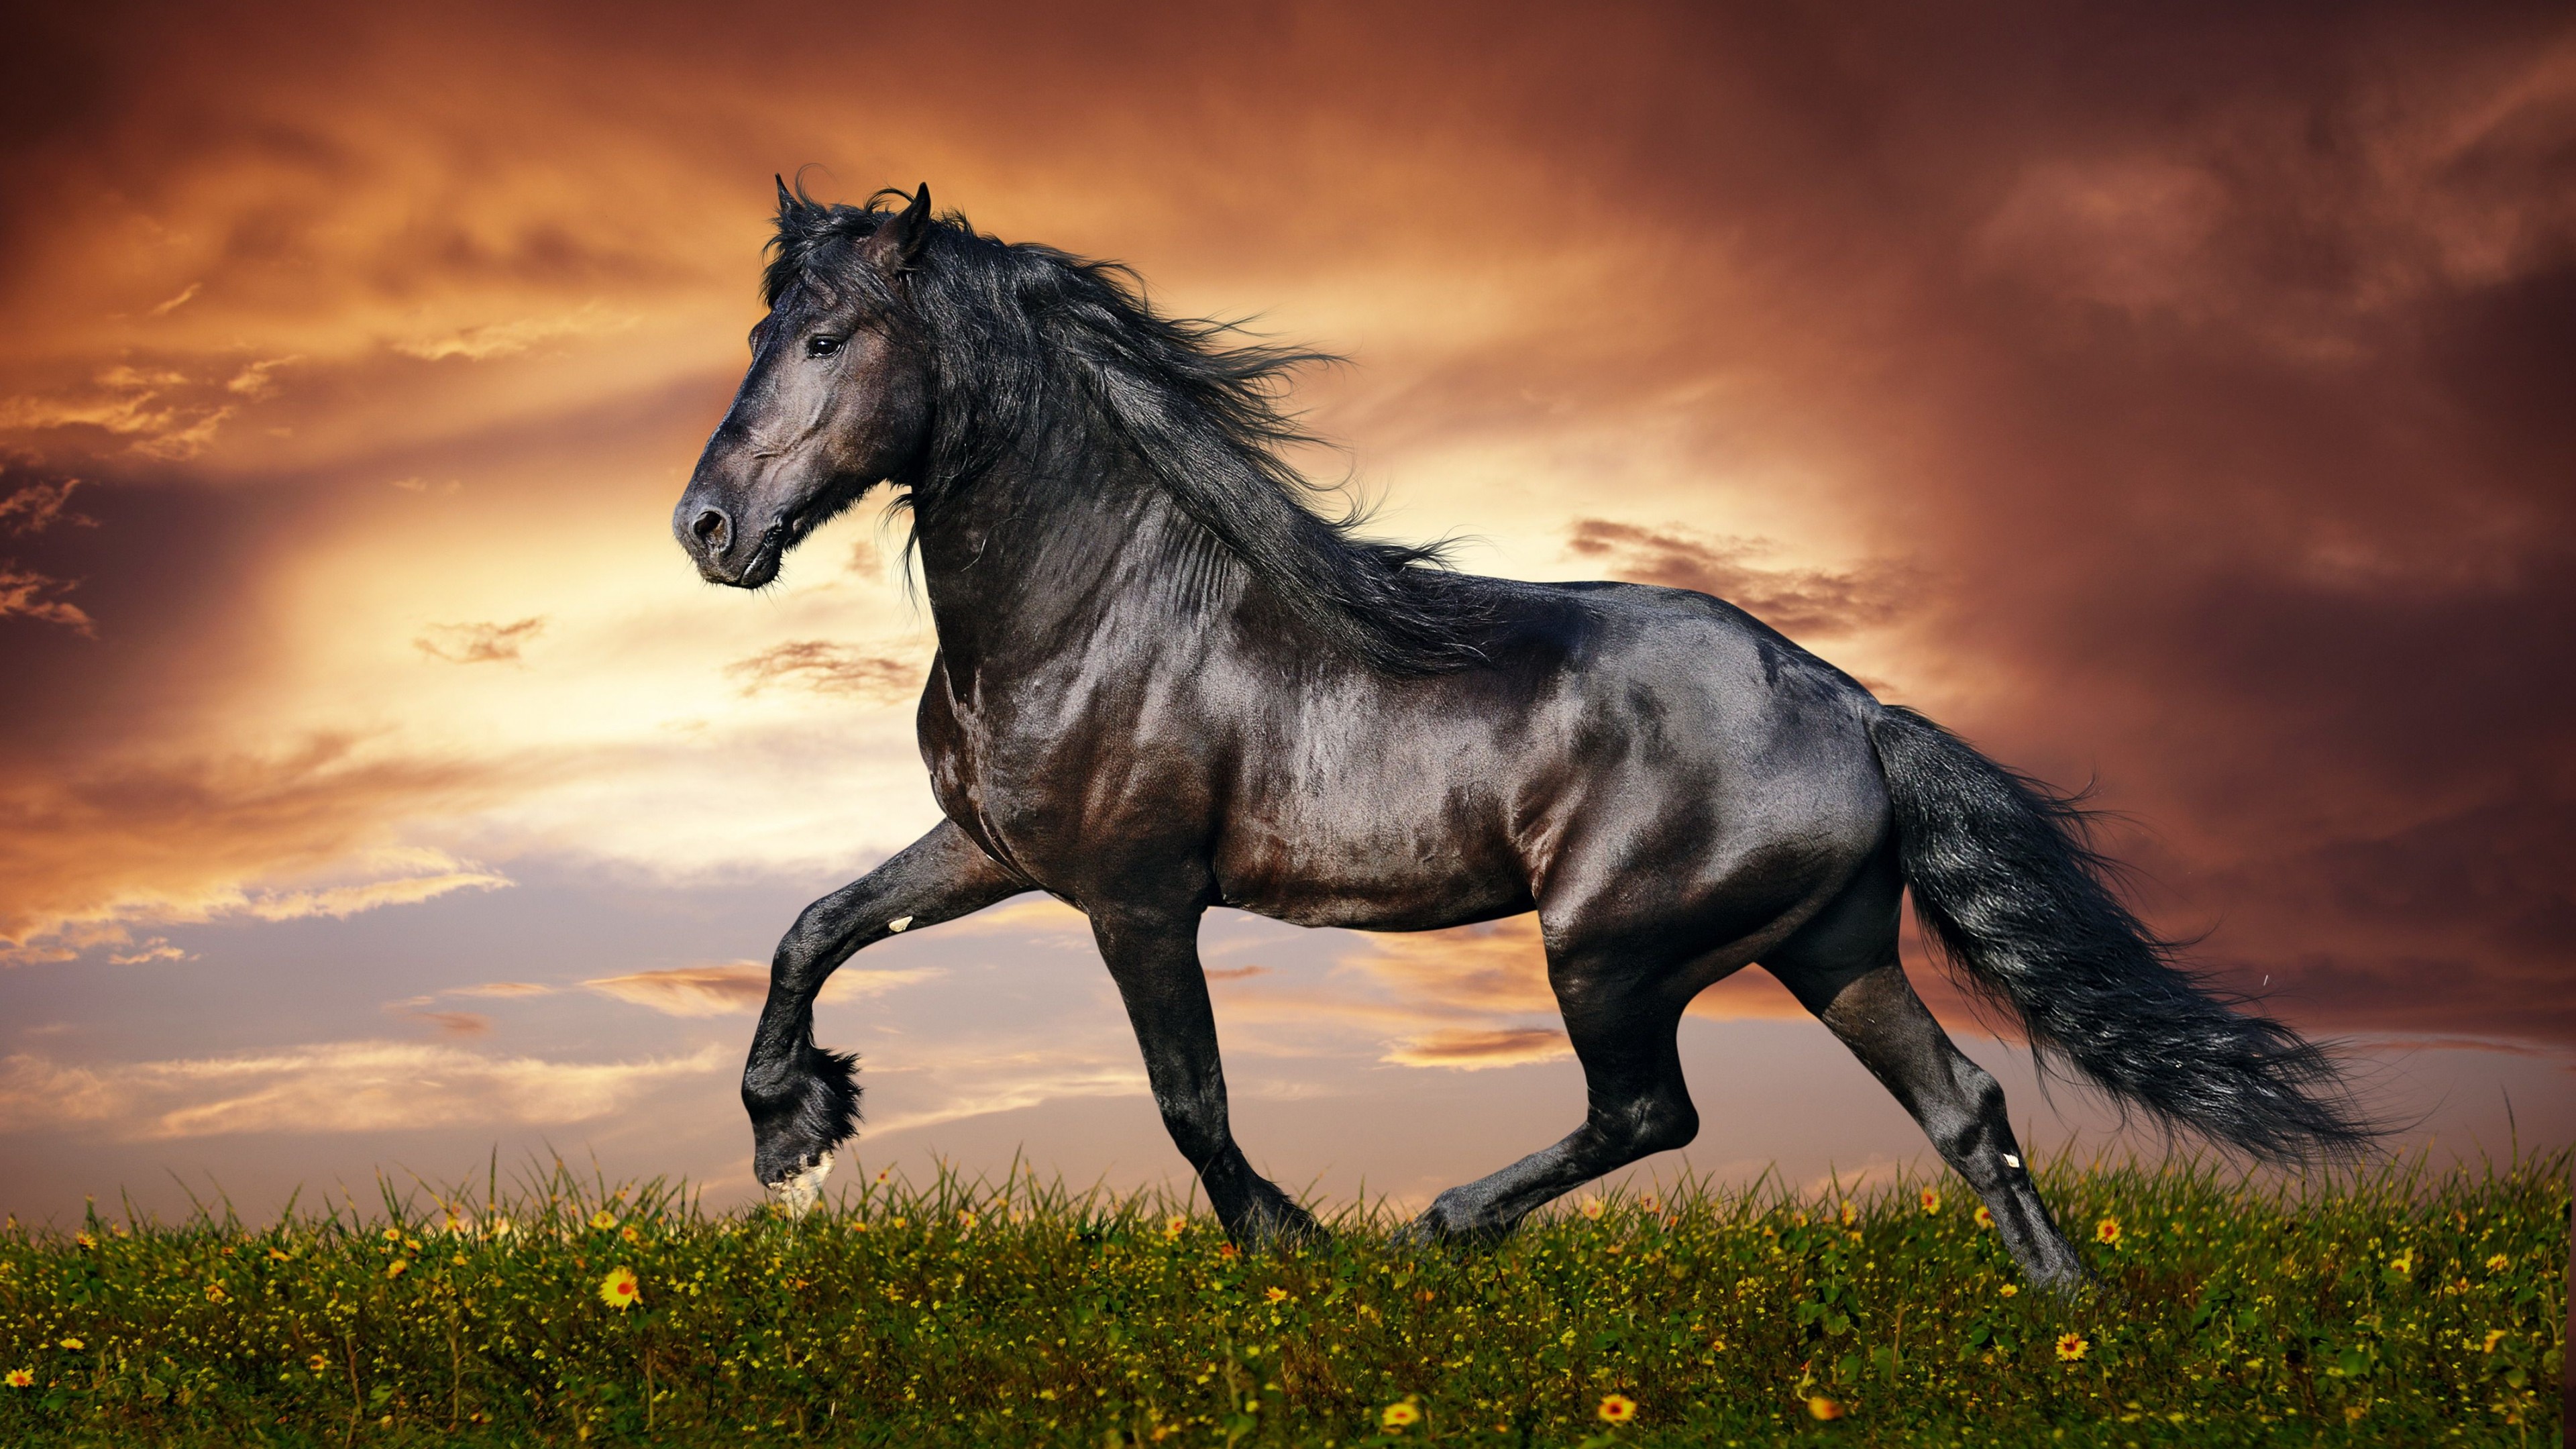 Wallpaper Horse 5k 4k Hooves Mane Galloping Black